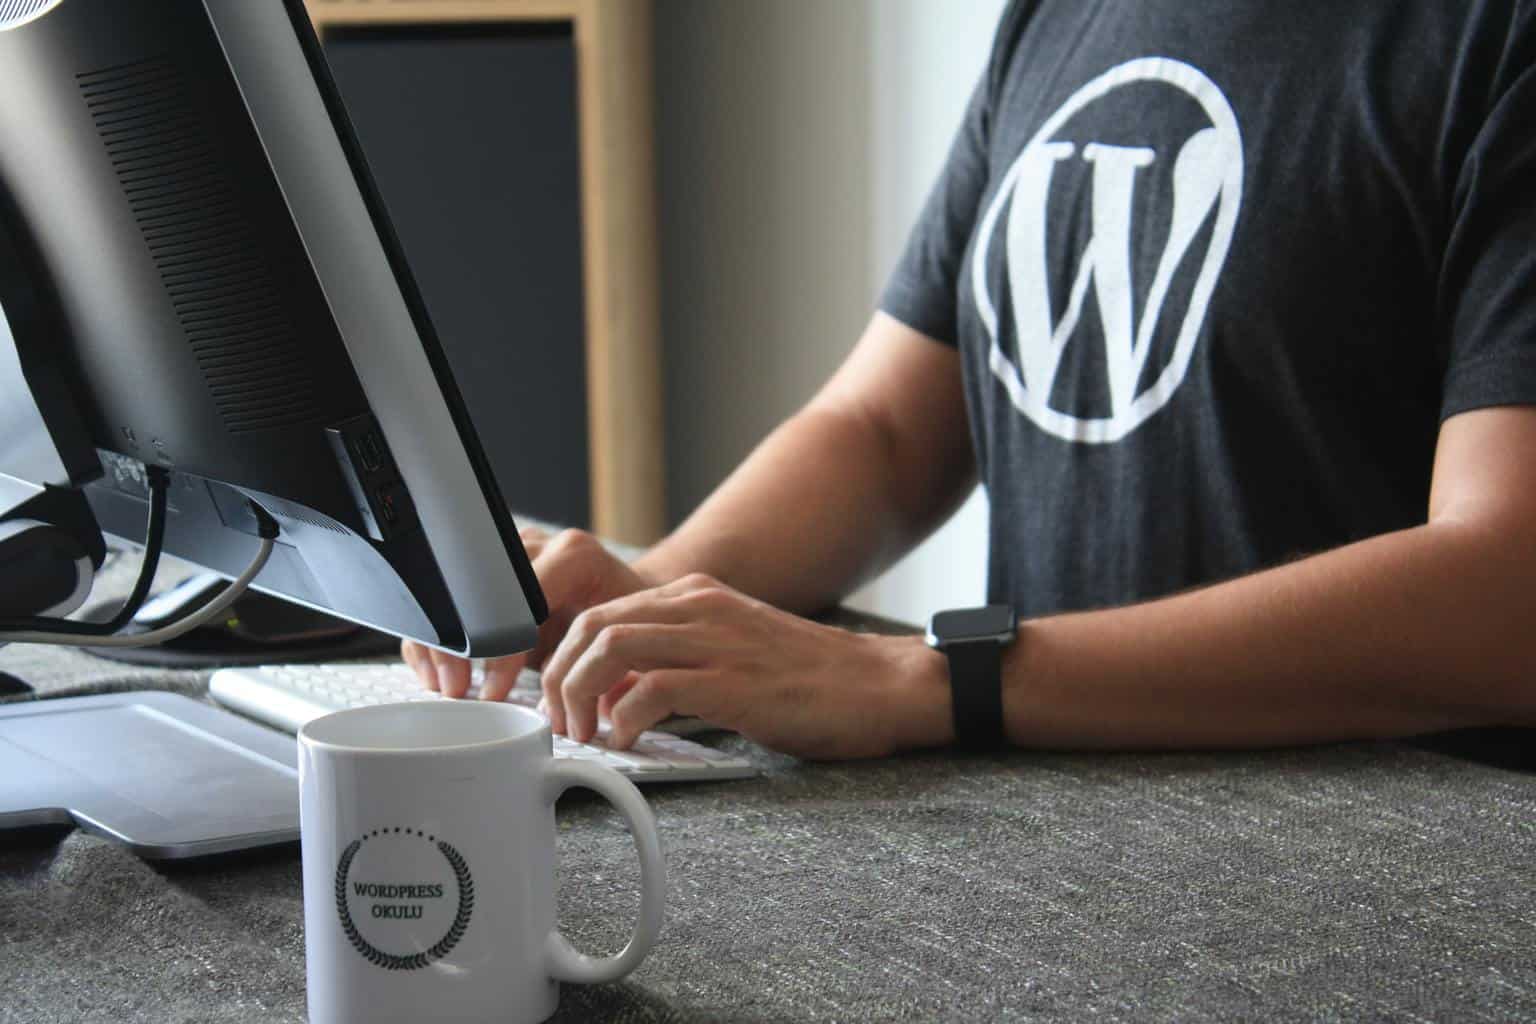 Man in WordPress shirt